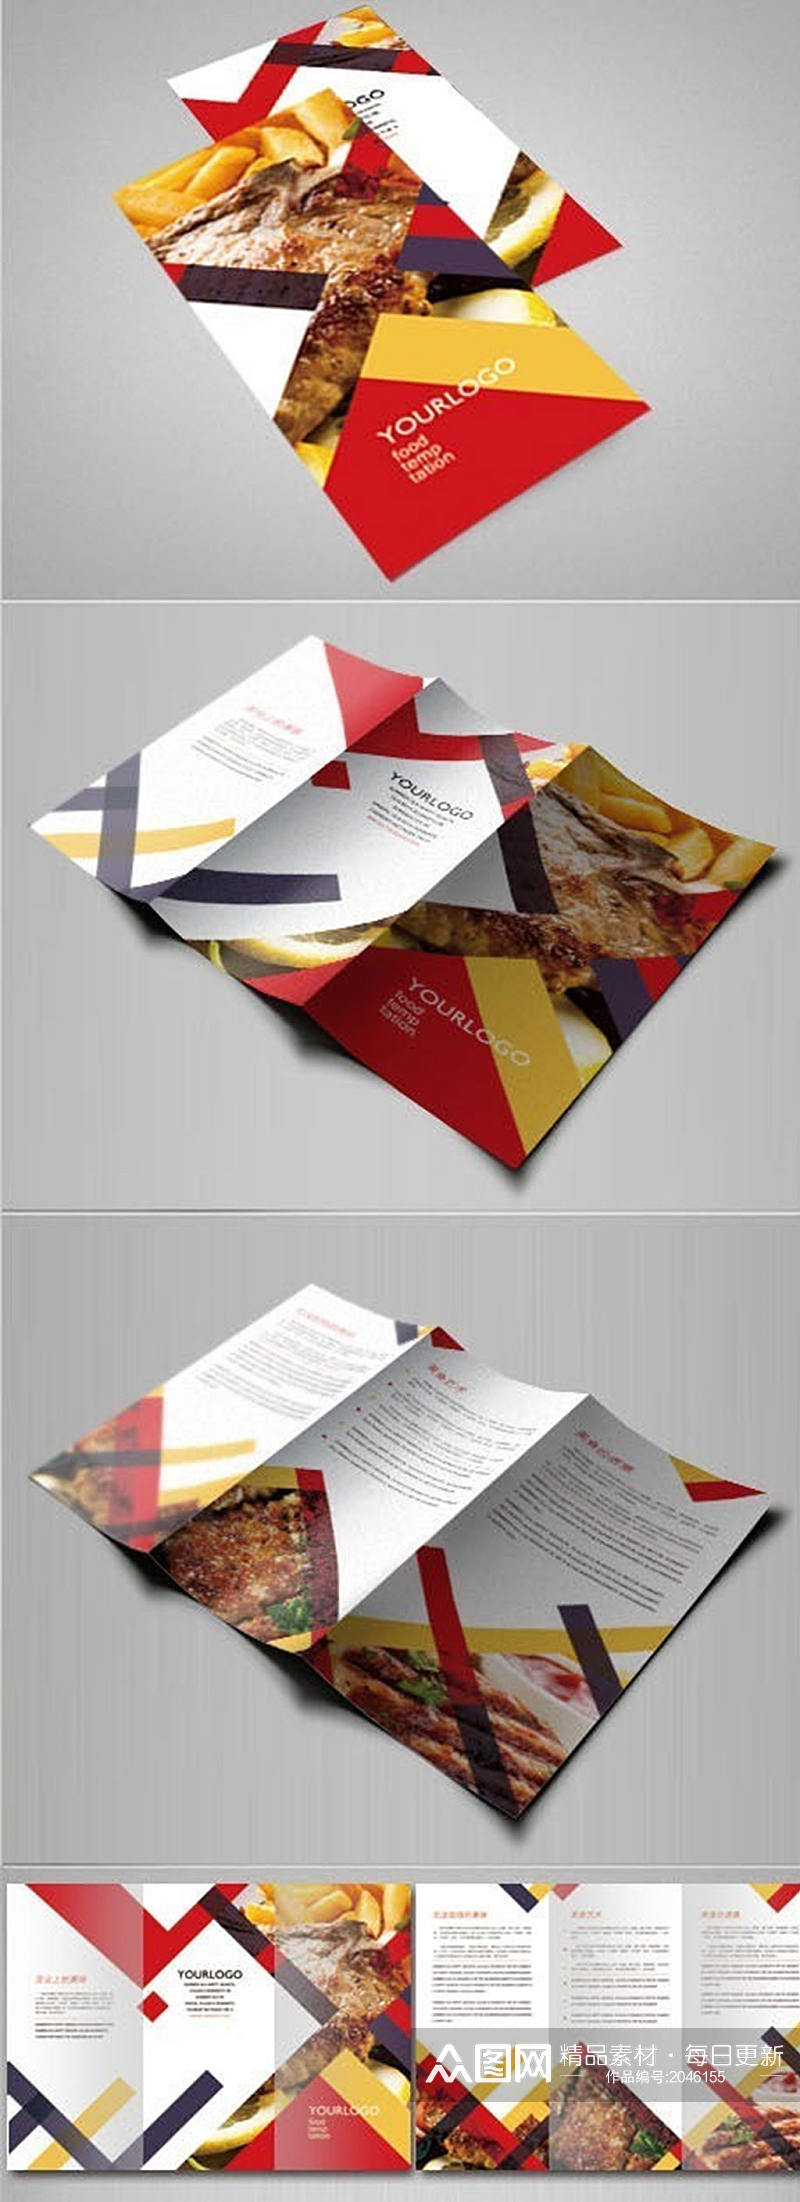 彩色美食三折页设计素材